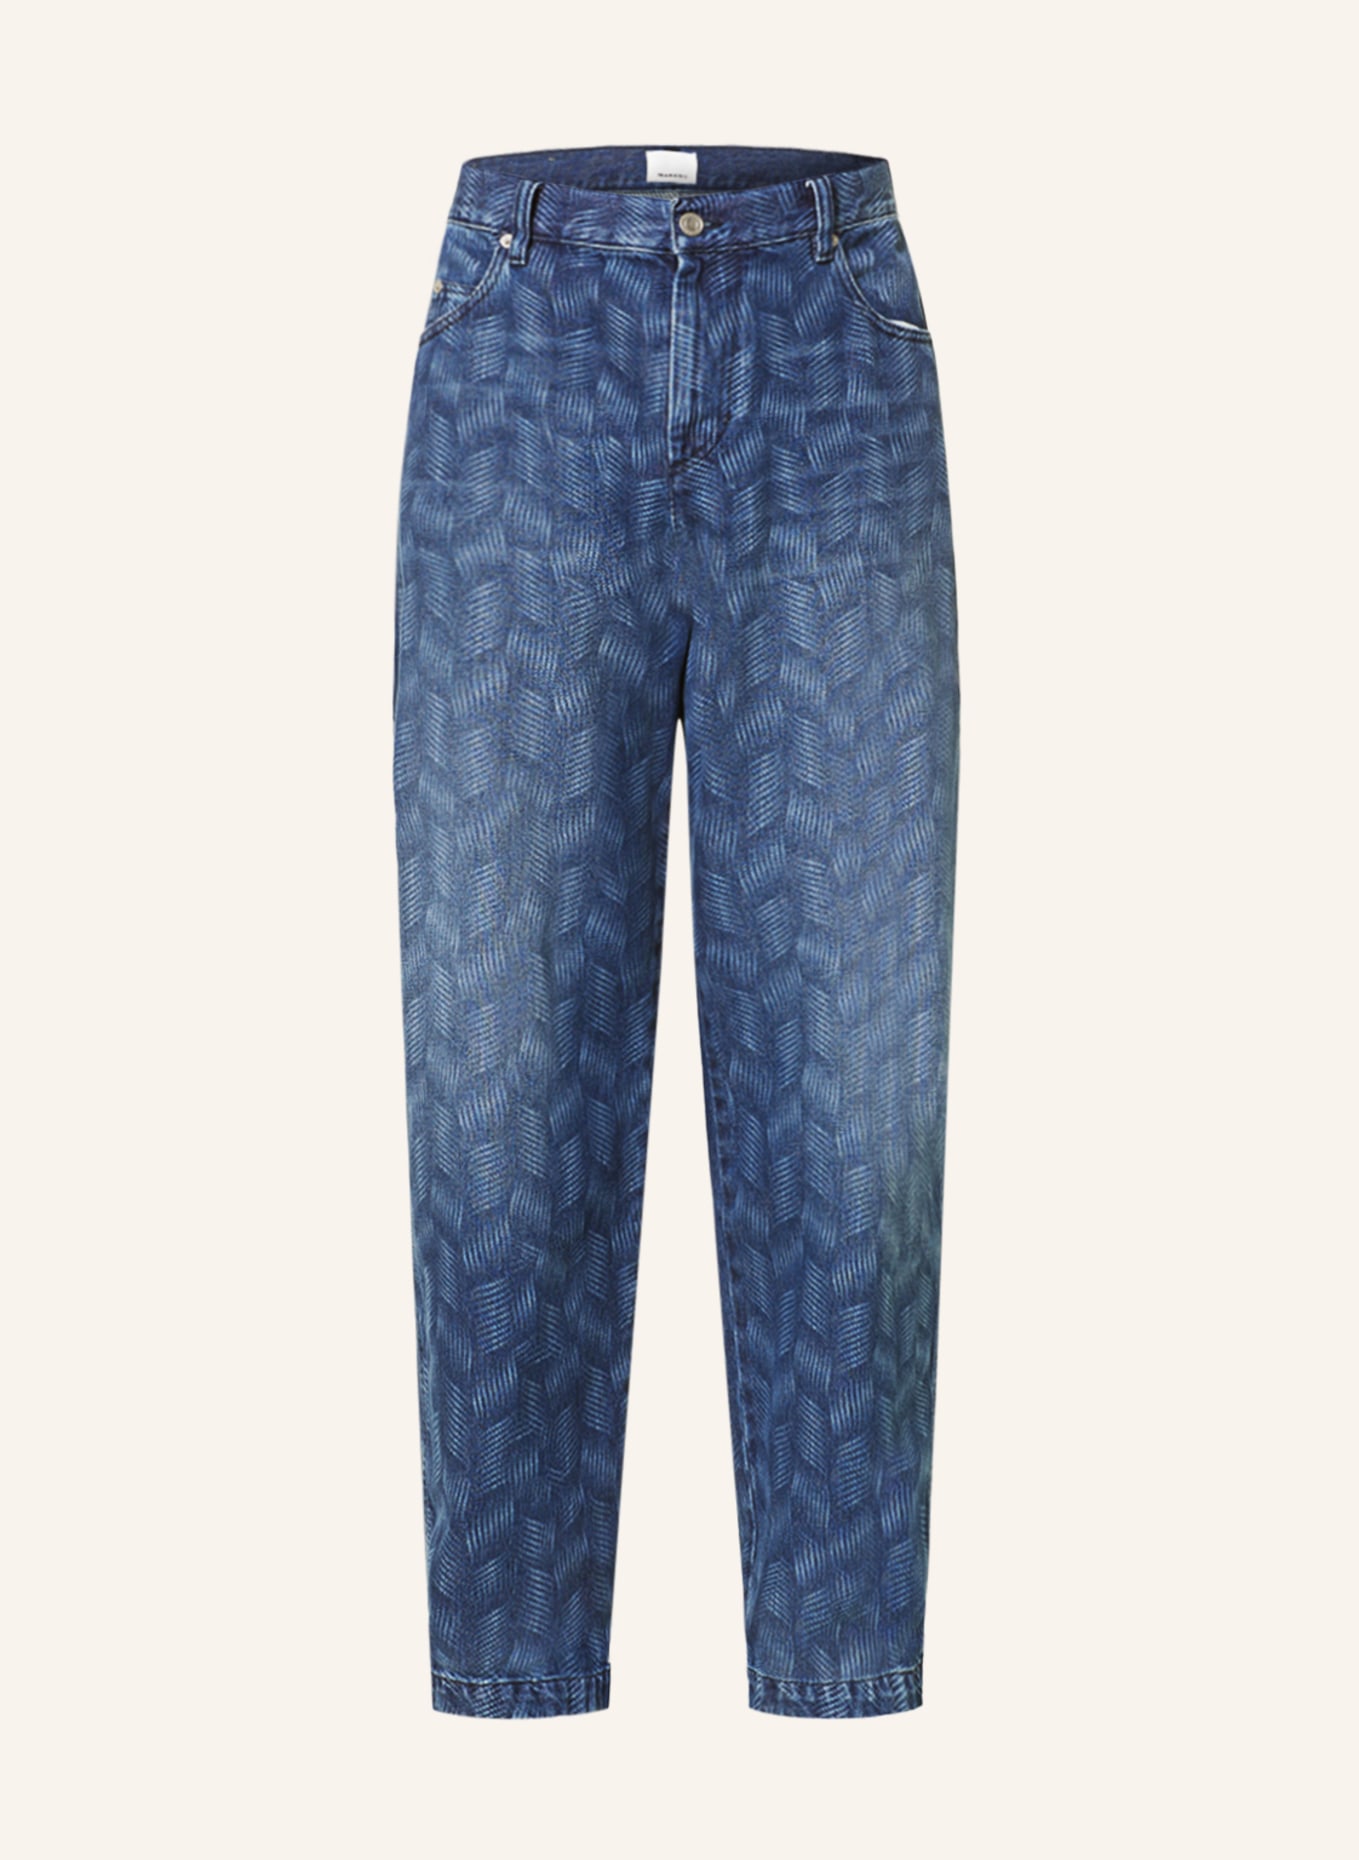 ISABEL MARANT Jeans JORJE Straight Fit, Farbe: 30BU blue (Bild 1)